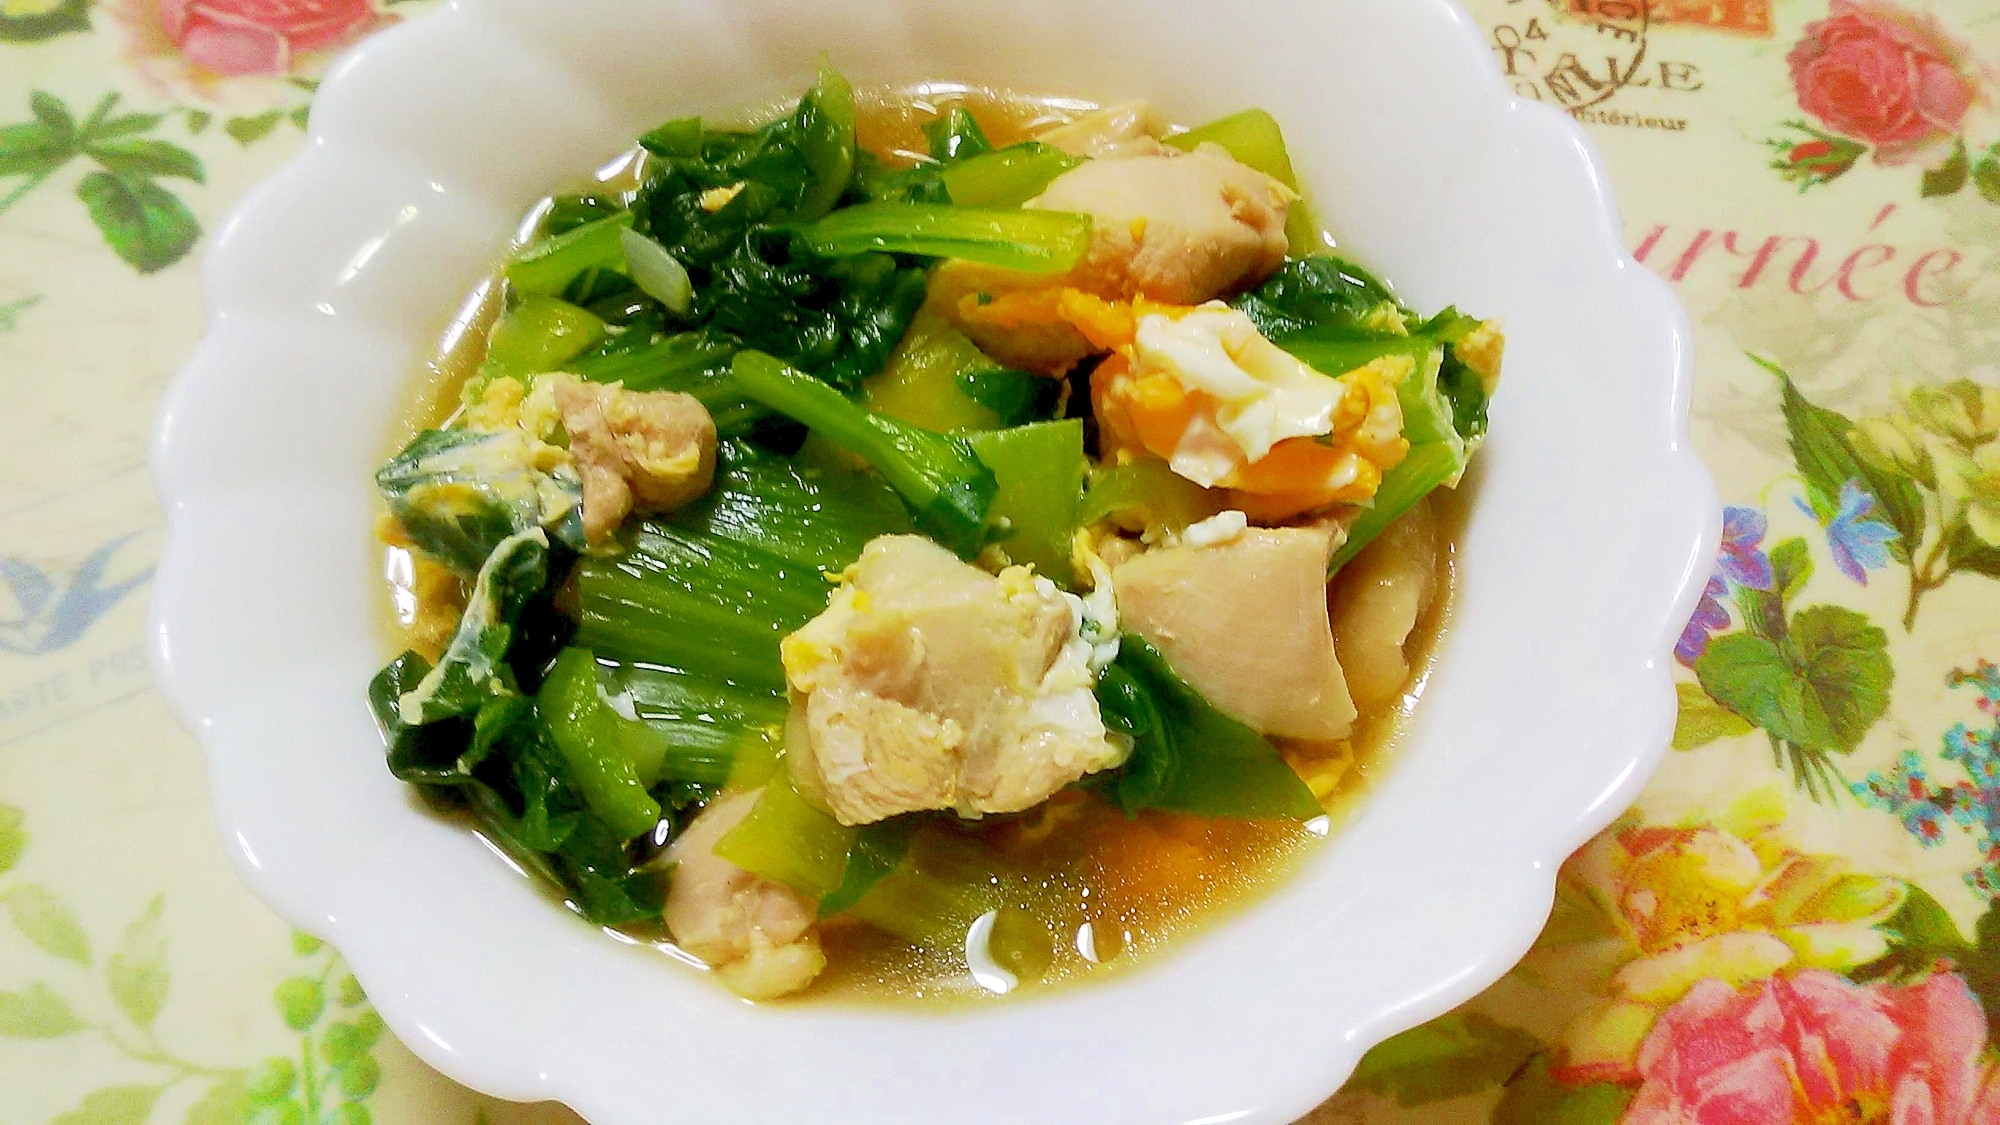 チンゲン菜と鶏肉と卵の中華風スープ